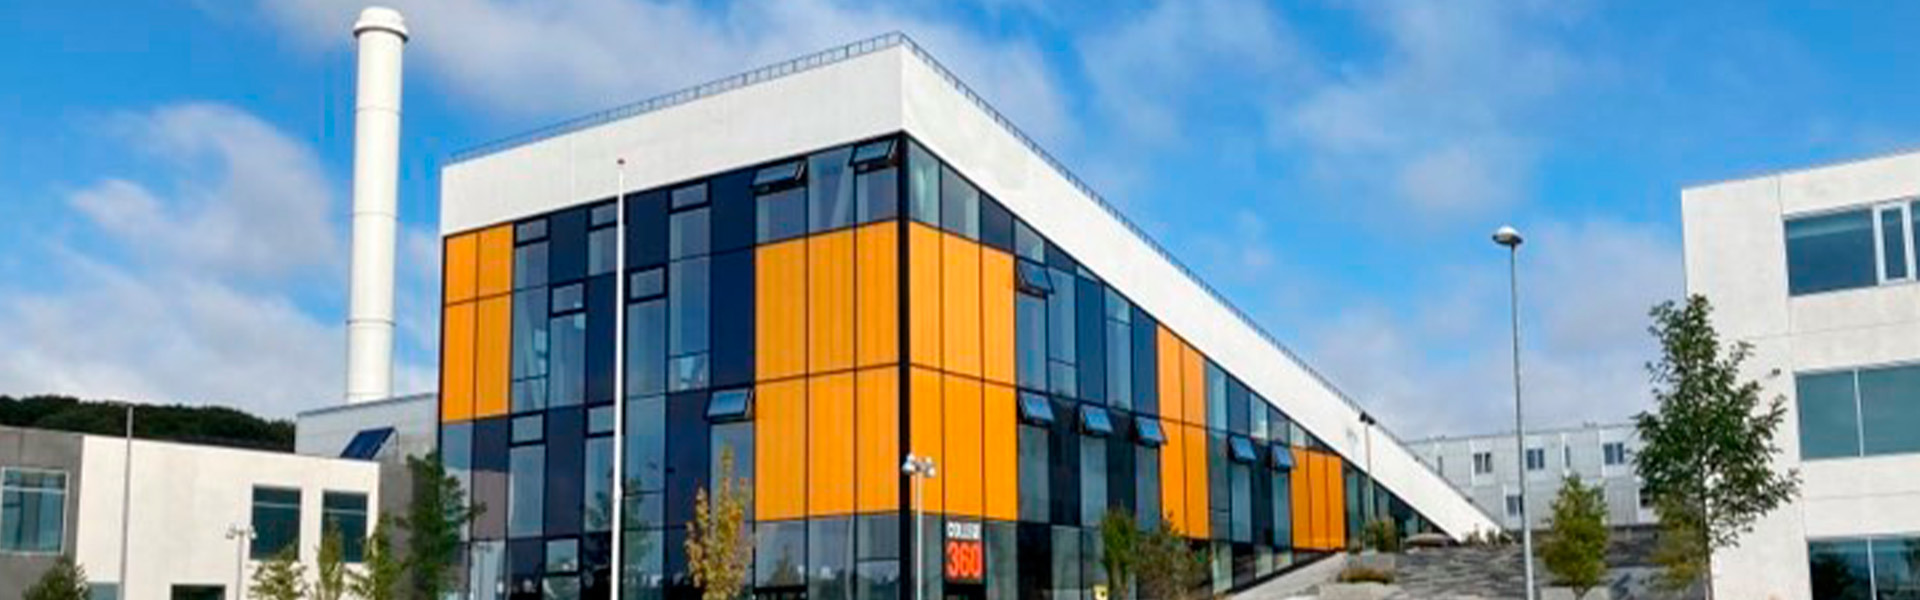 Bygning College360 Bredhøjvej 8 set udefra 